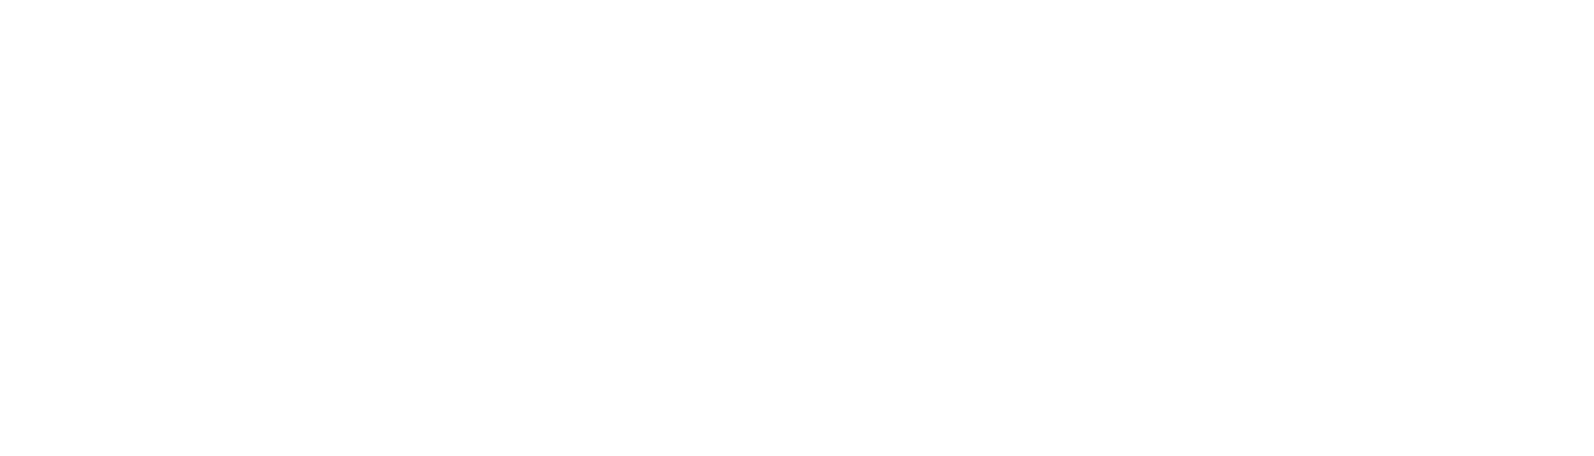 Vertex Energy
 logo large for dark backgrounds (transparent PNG)